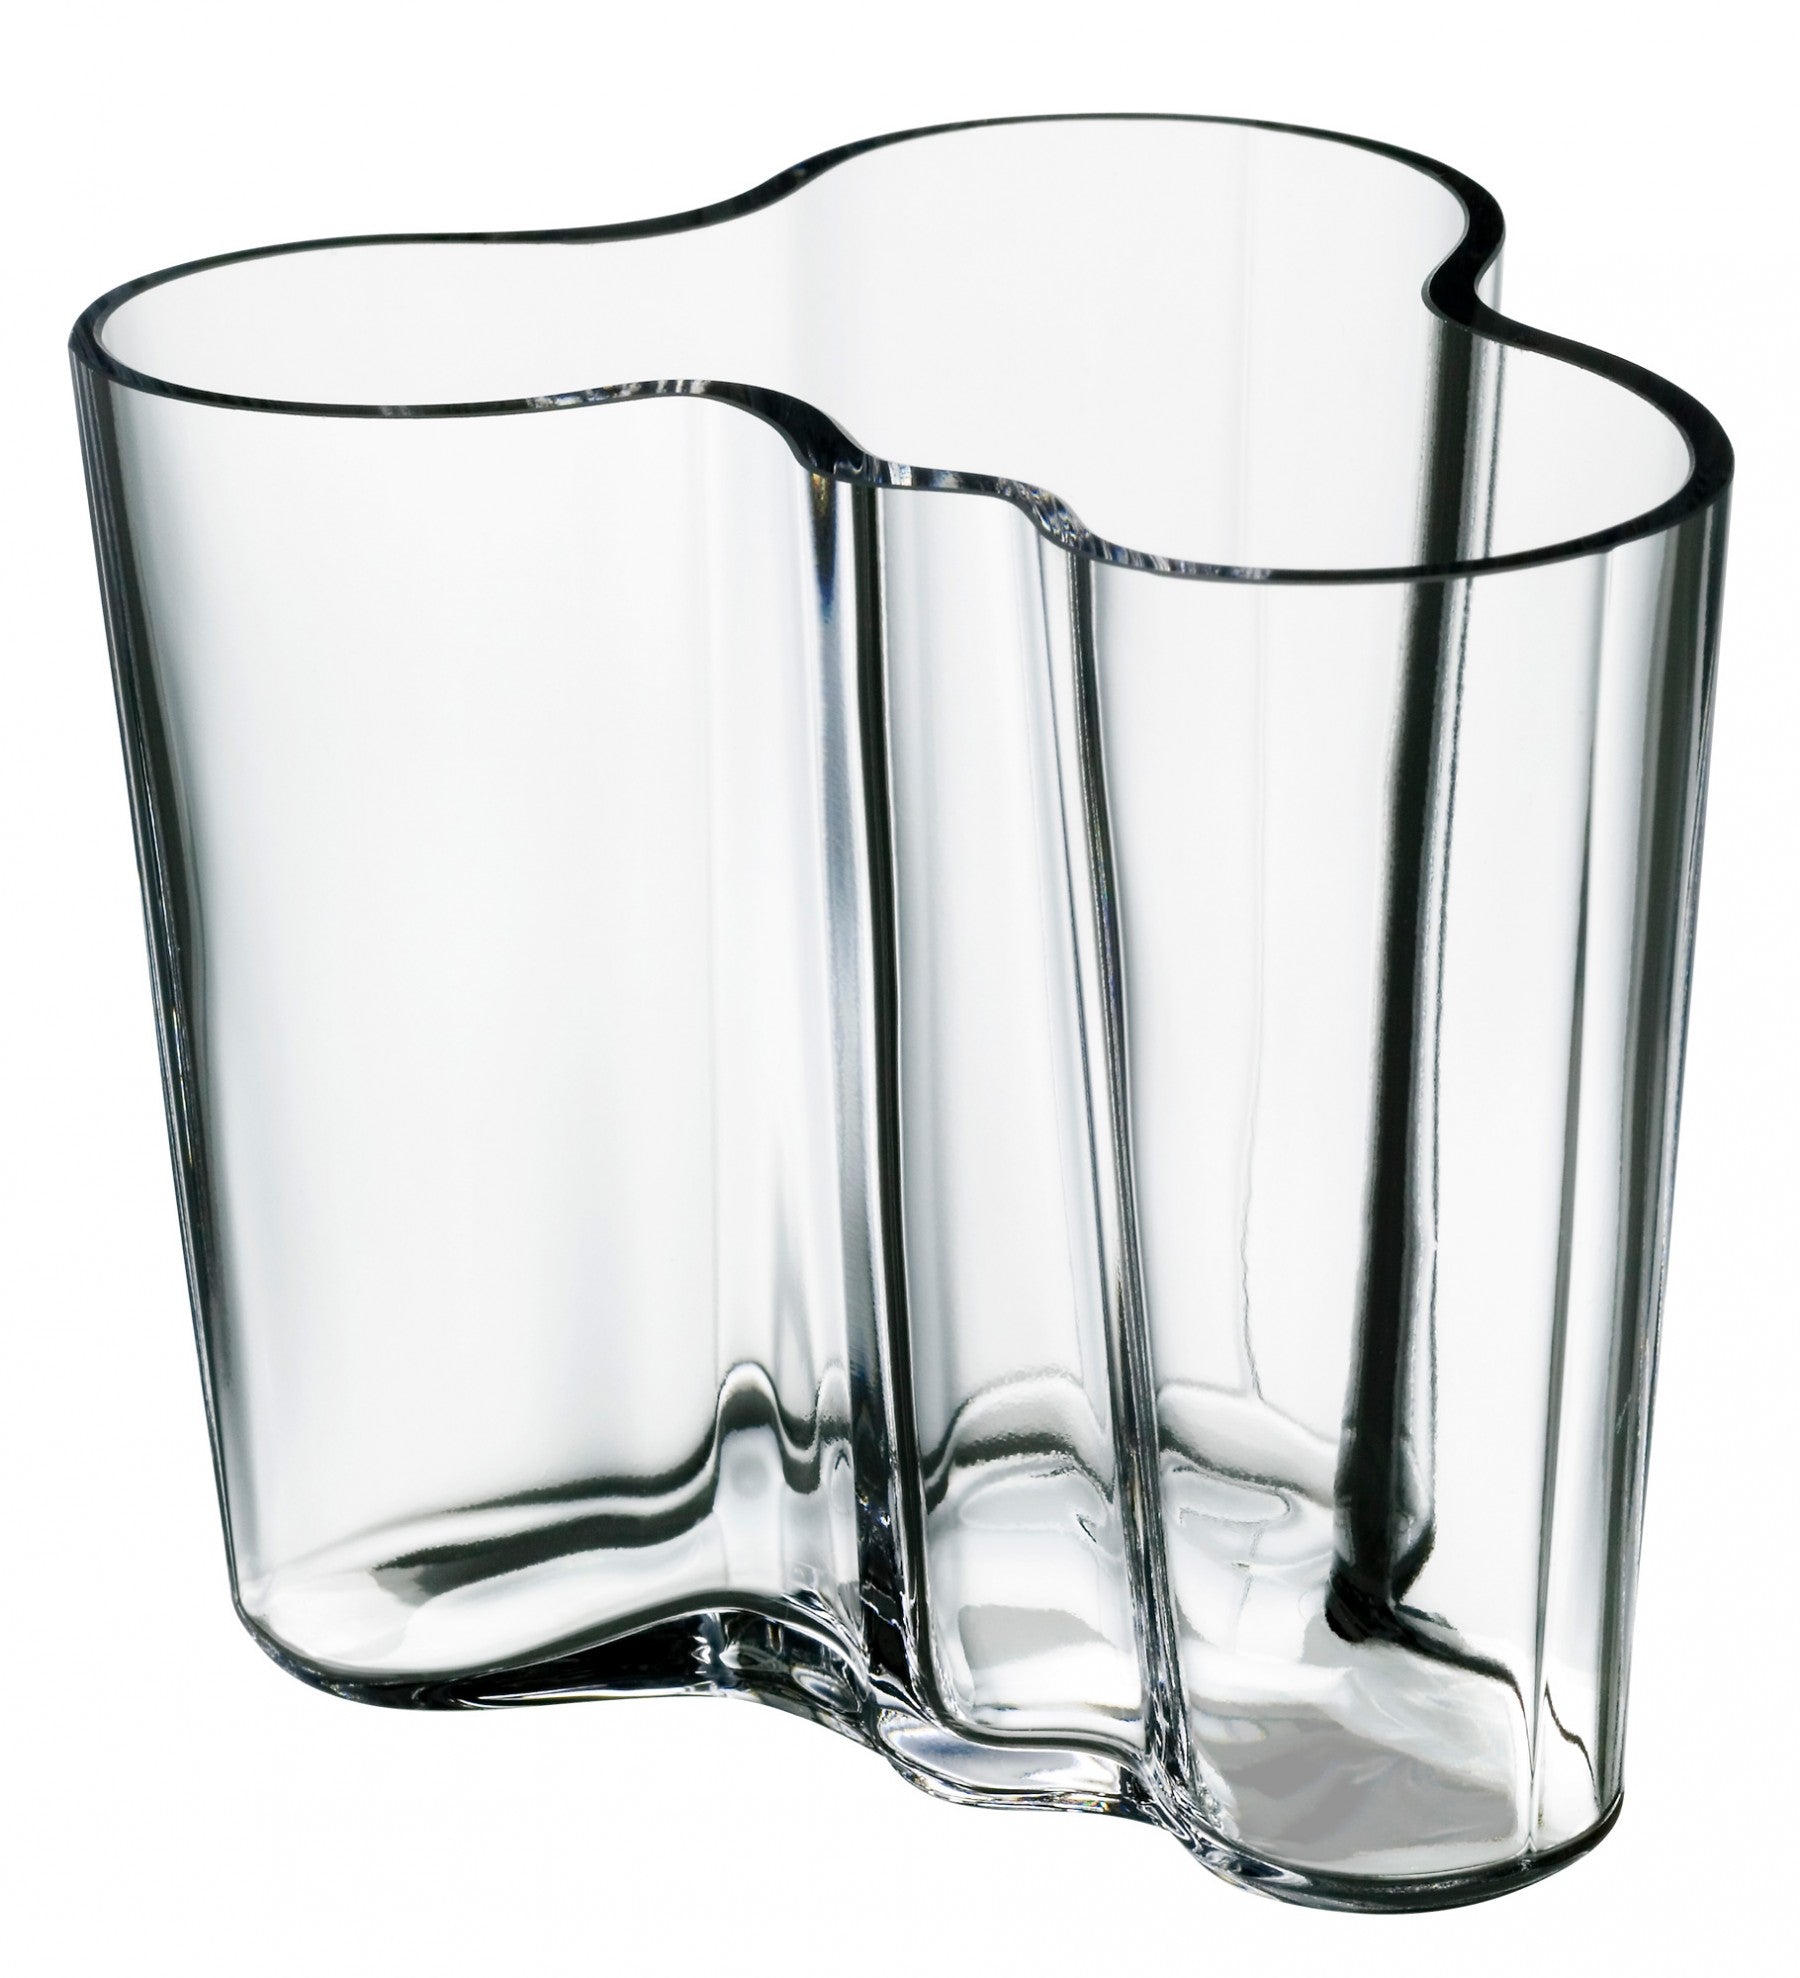 Iittala Alvar Aalto Vase 4.75 Inch / 120 mm Clear